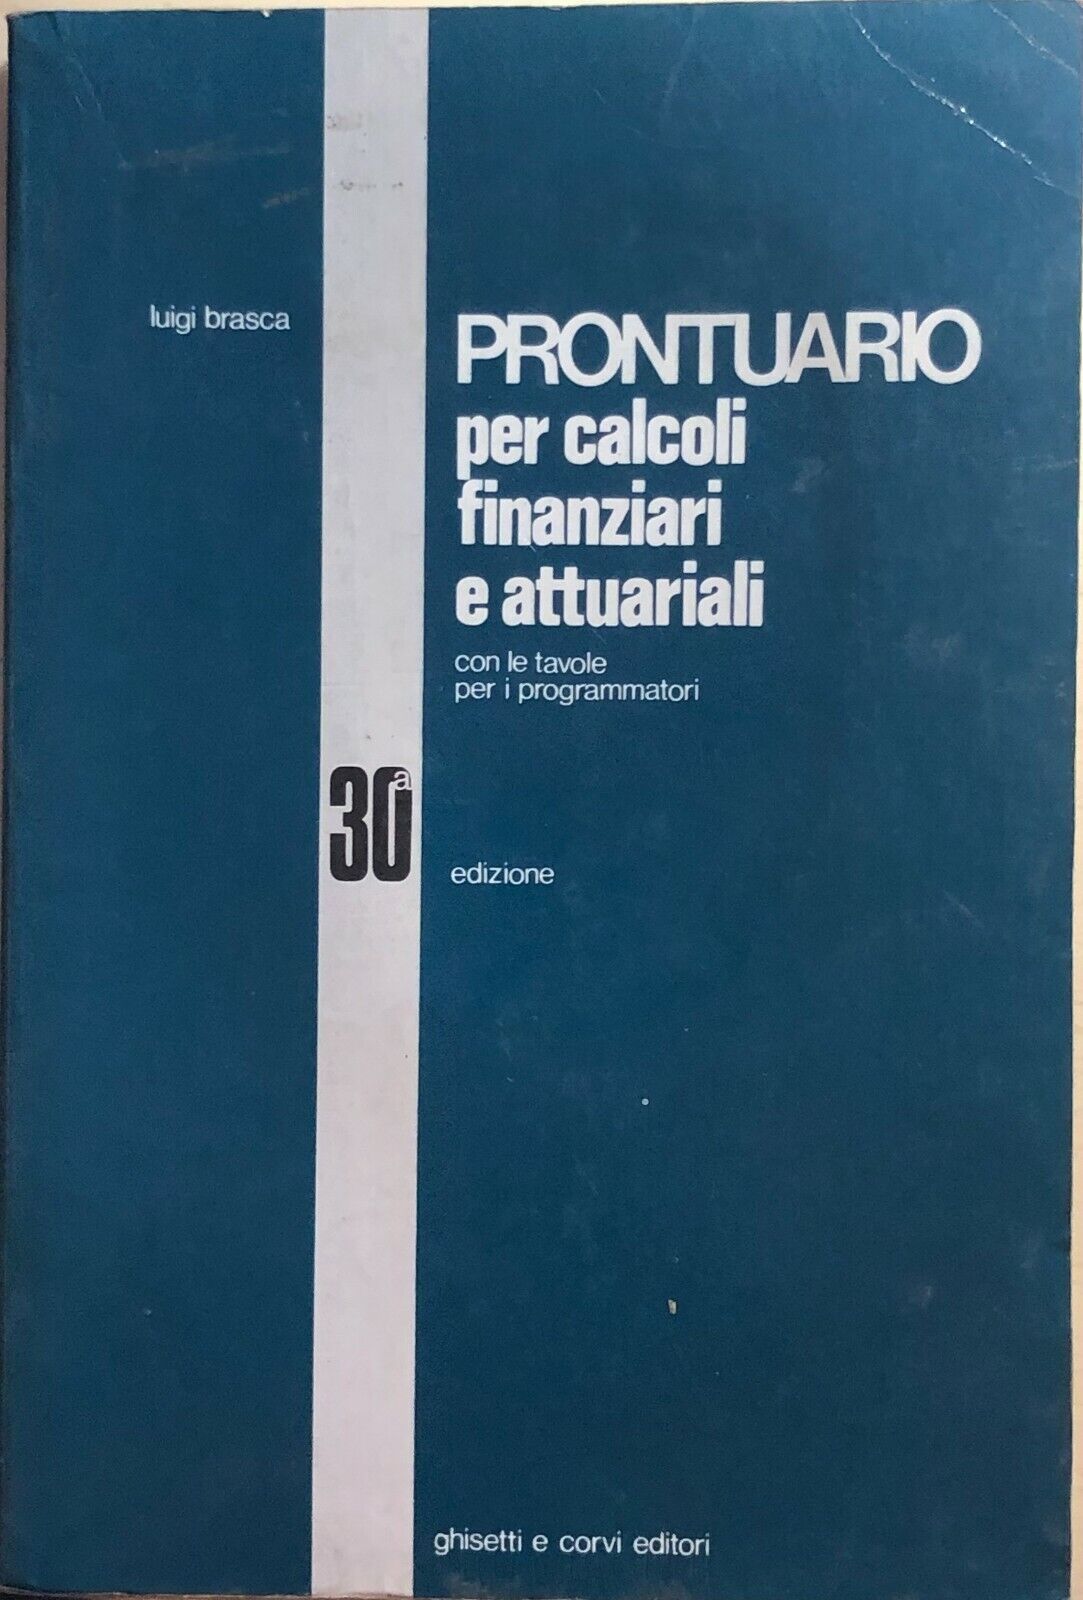 Prontuario per calcoli finanziari e attuariali di Luigi Brasca, 1990, Ghisetti e